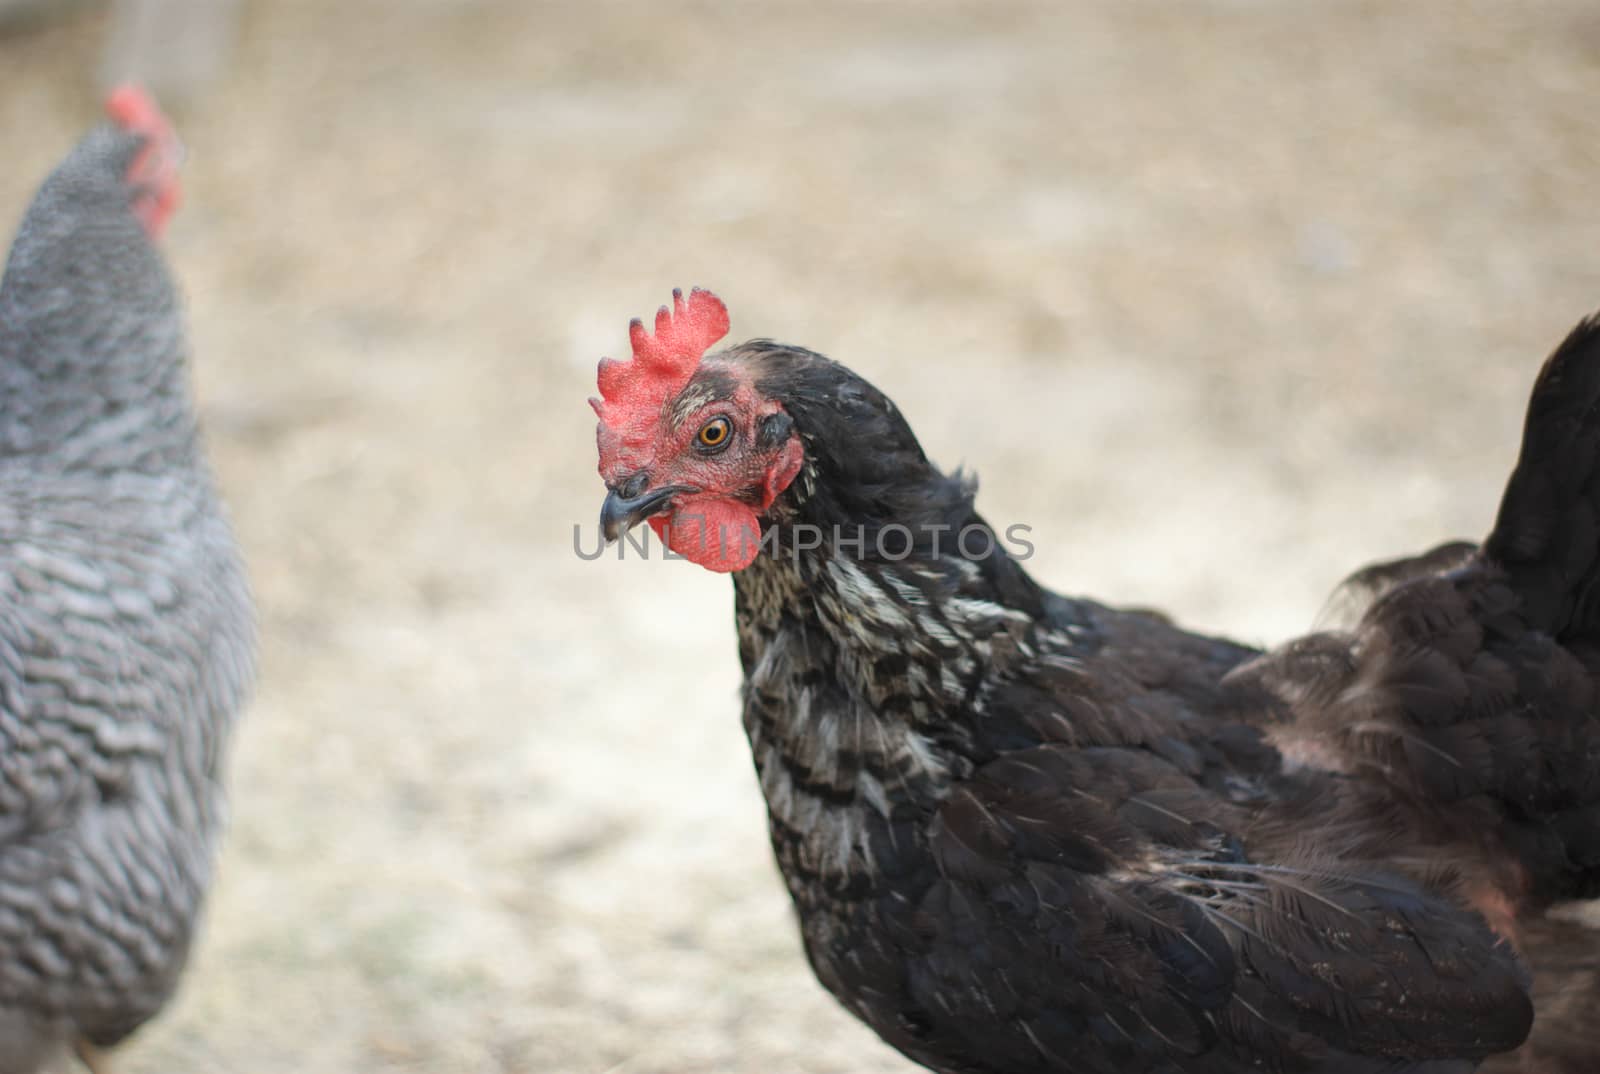 black hen portrait with gray chicken in background